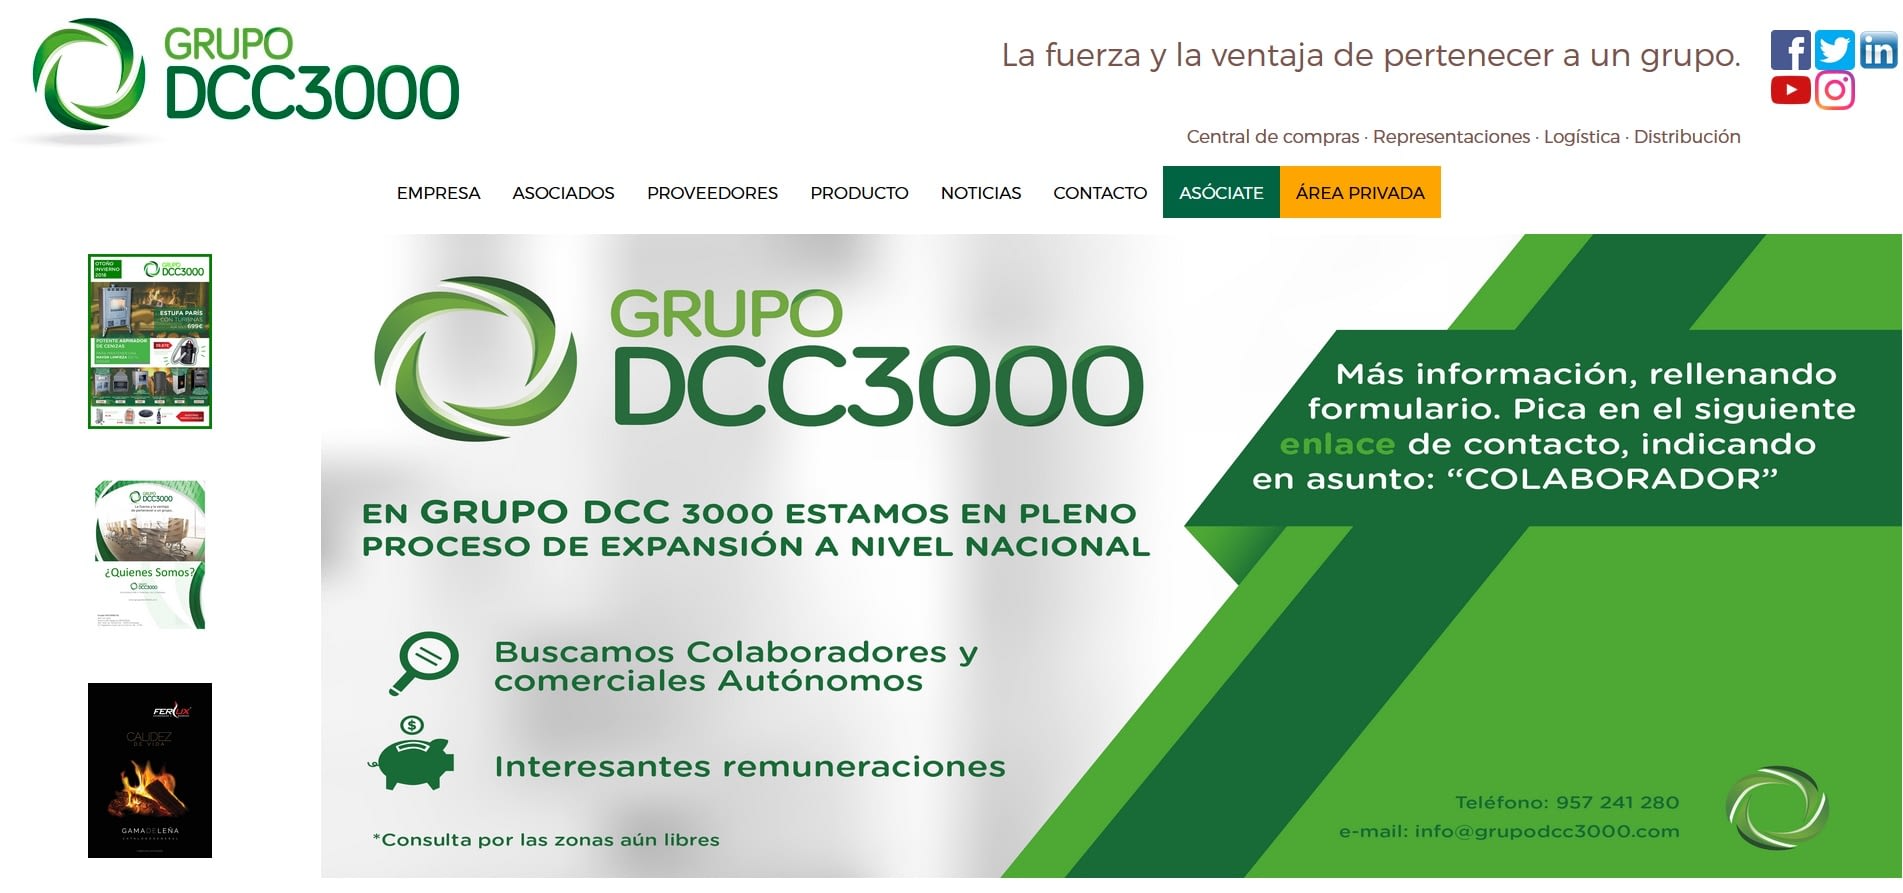 Grupo DCC3000